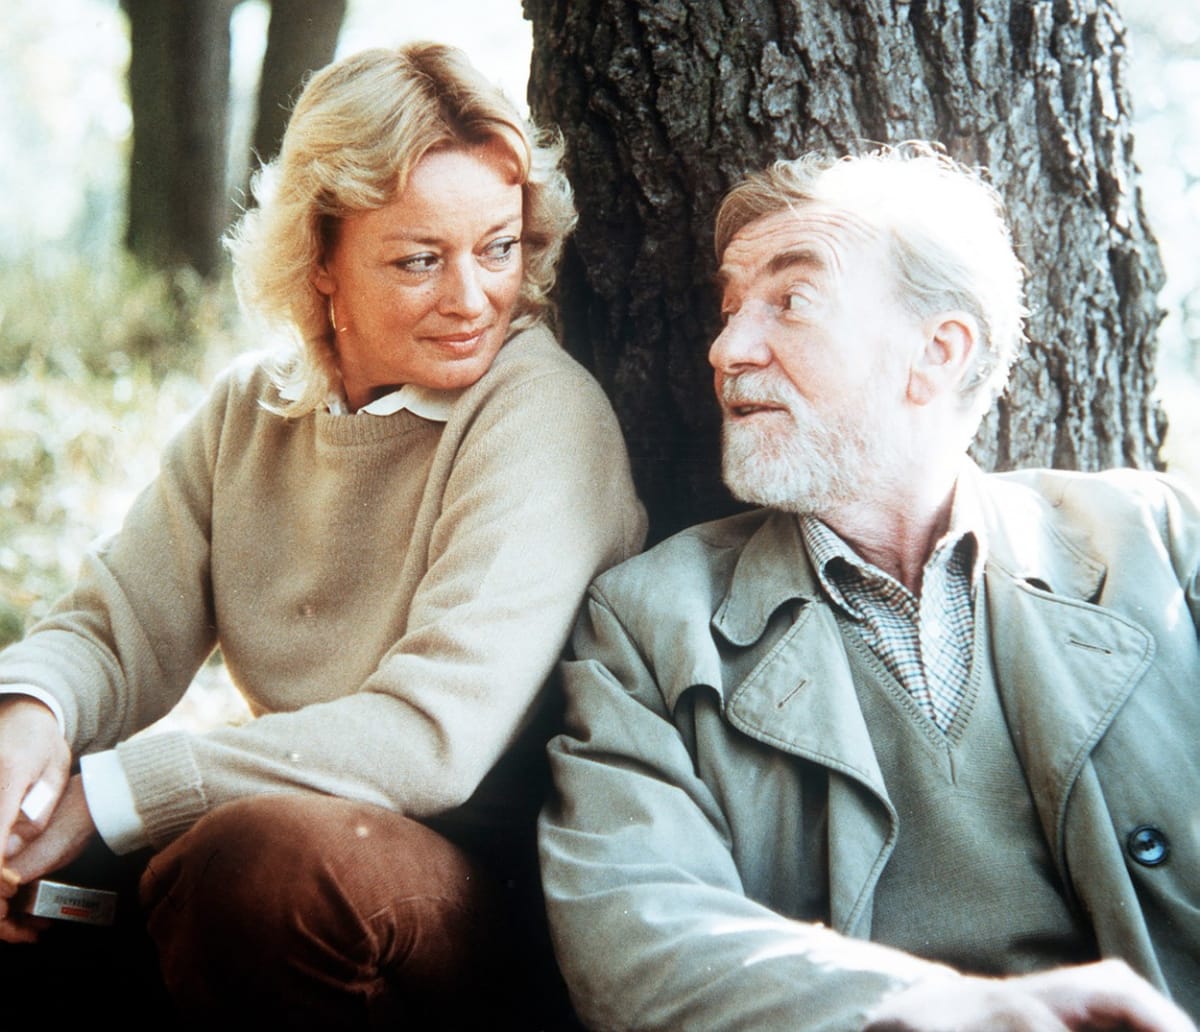 Její otec Miroslav Macháček měl velmi komplikovanou povahu. Na snímku s Janou Brejchovou ve filmu Skalpel, prosím.